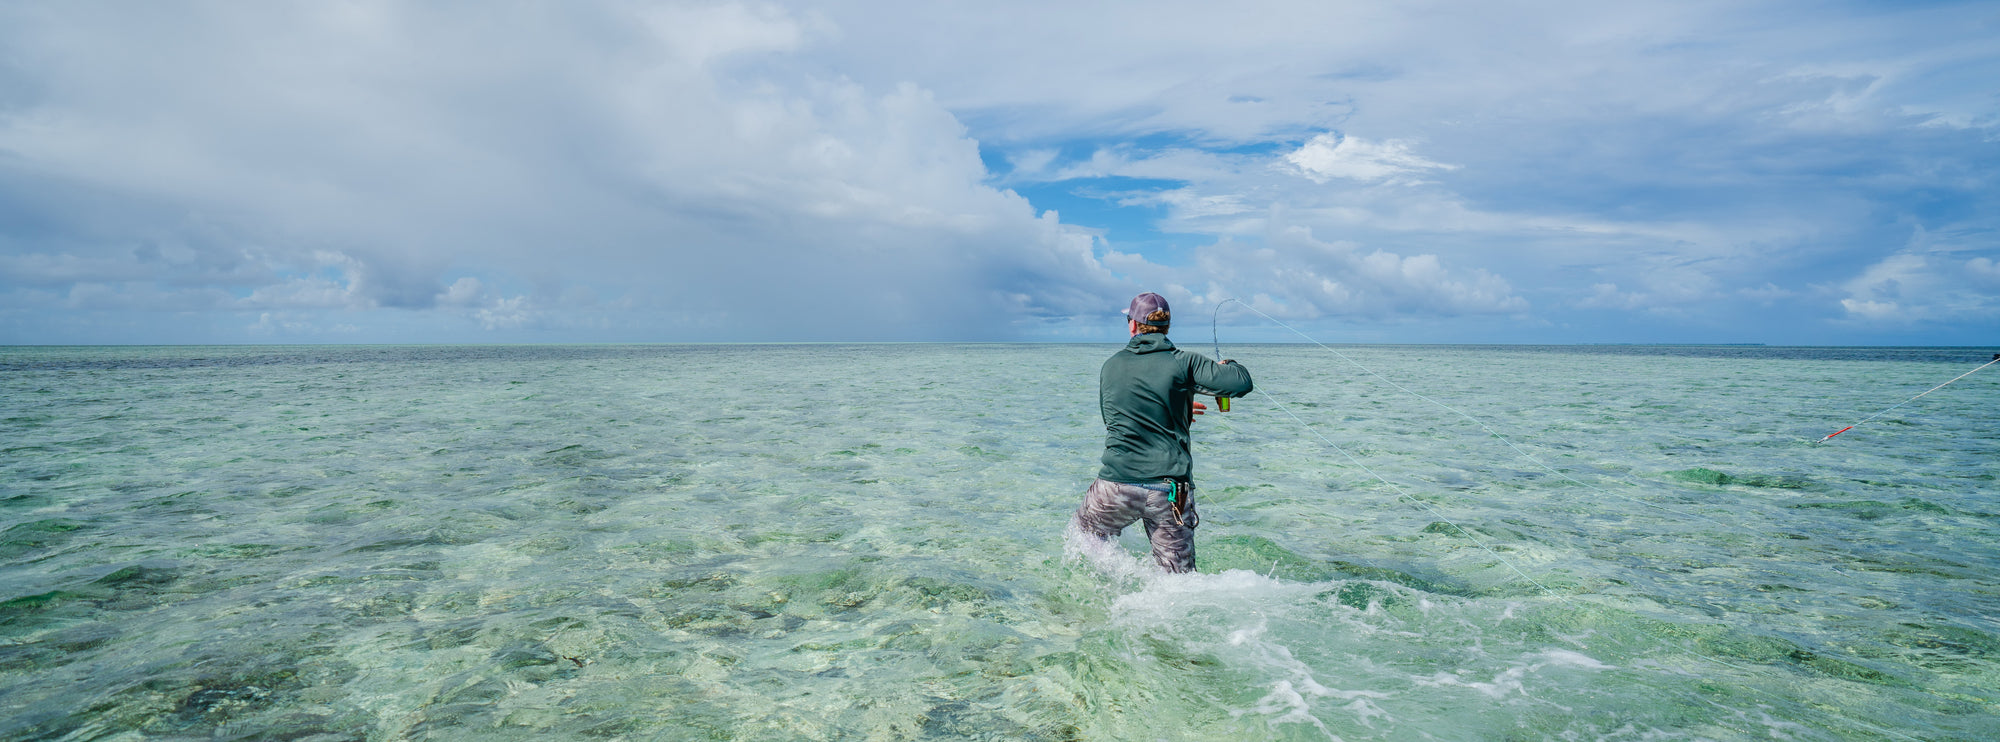 JAKO LUCAS FISHING IN OCEAN